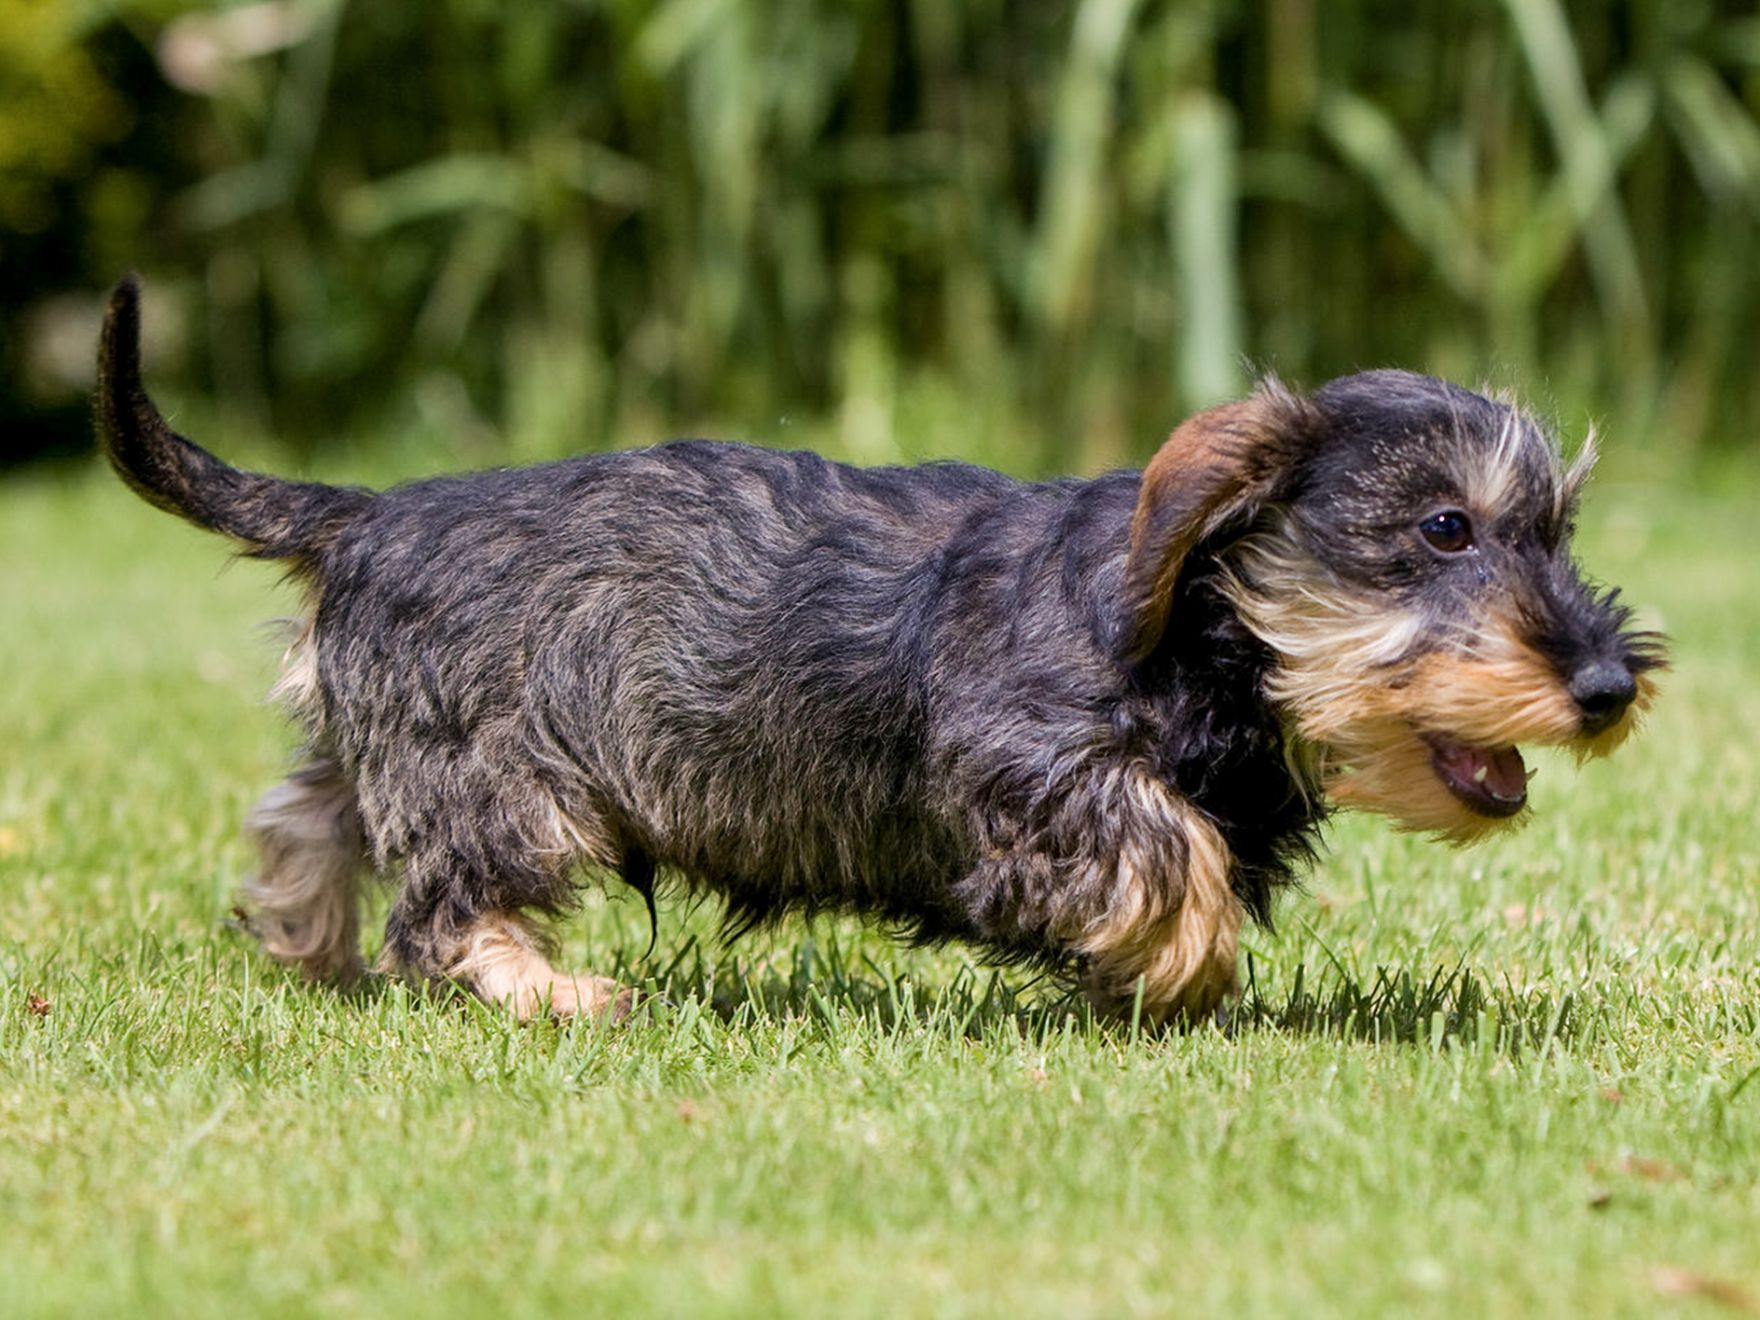 Dachshund puppy running outdoors in a garden